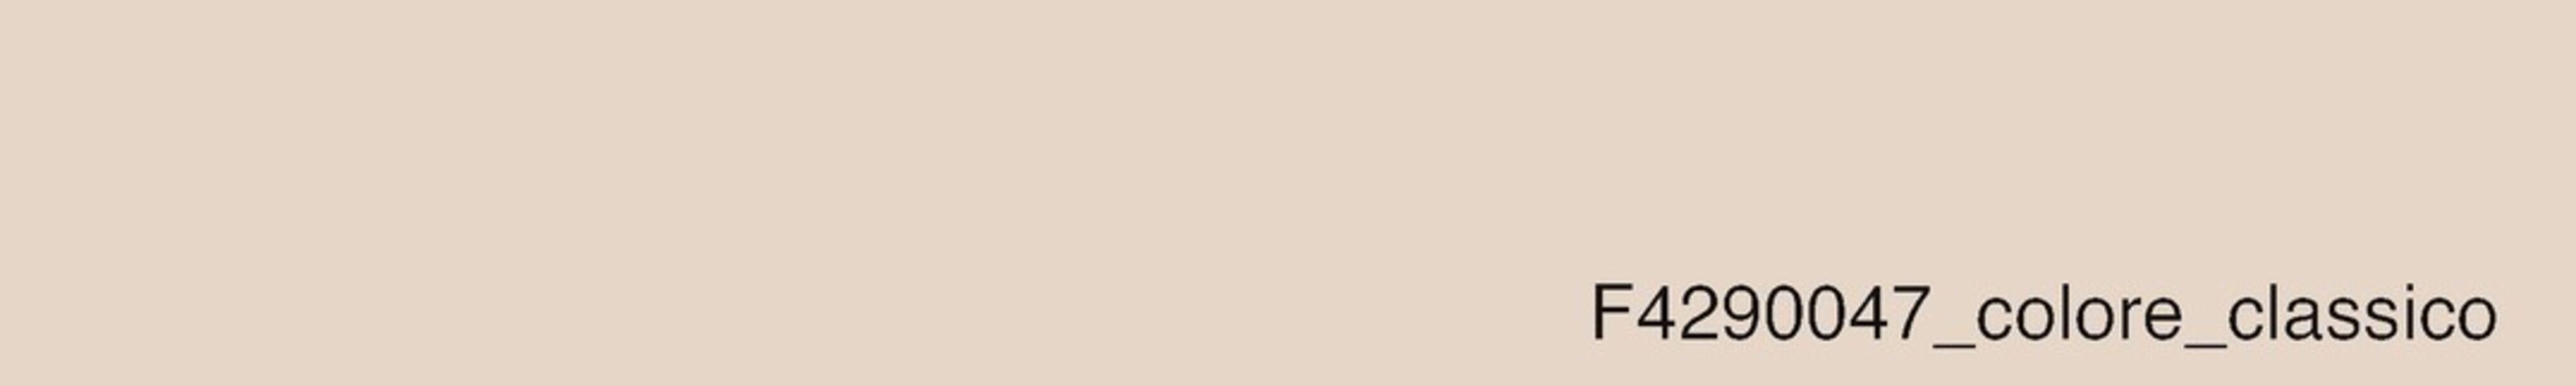 skai® colore classico sandbeige          0,35 1420